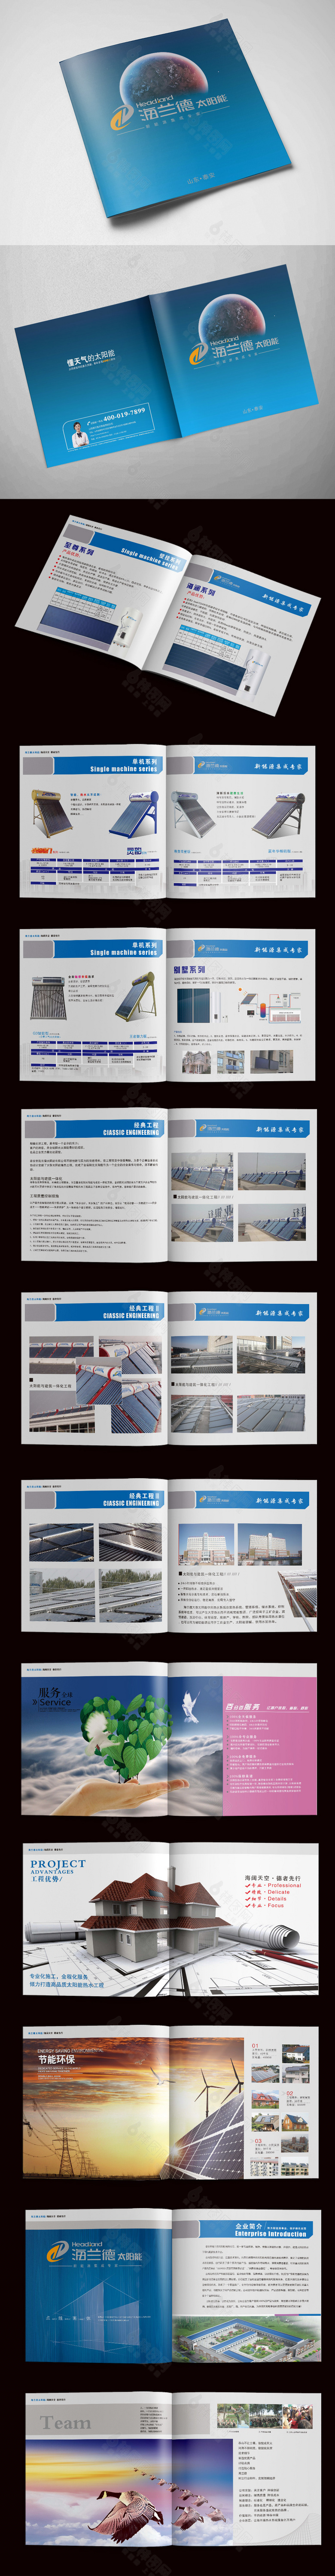 高端节能太阳能热水器画册